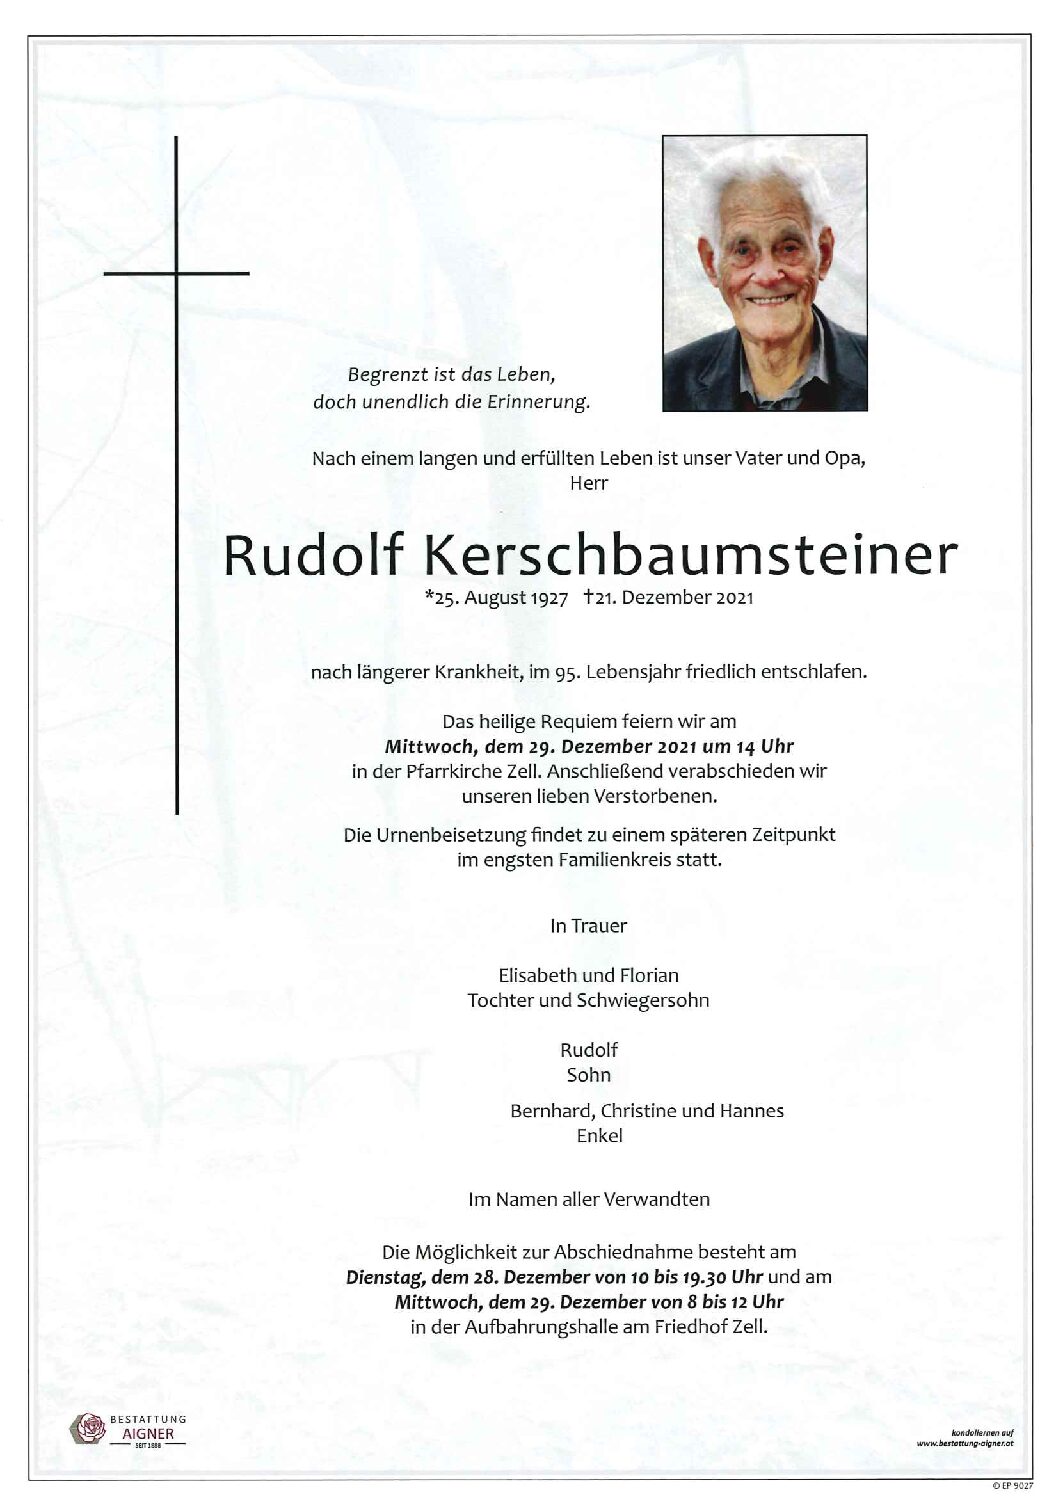 Rudolf Kerschbaumsteiner